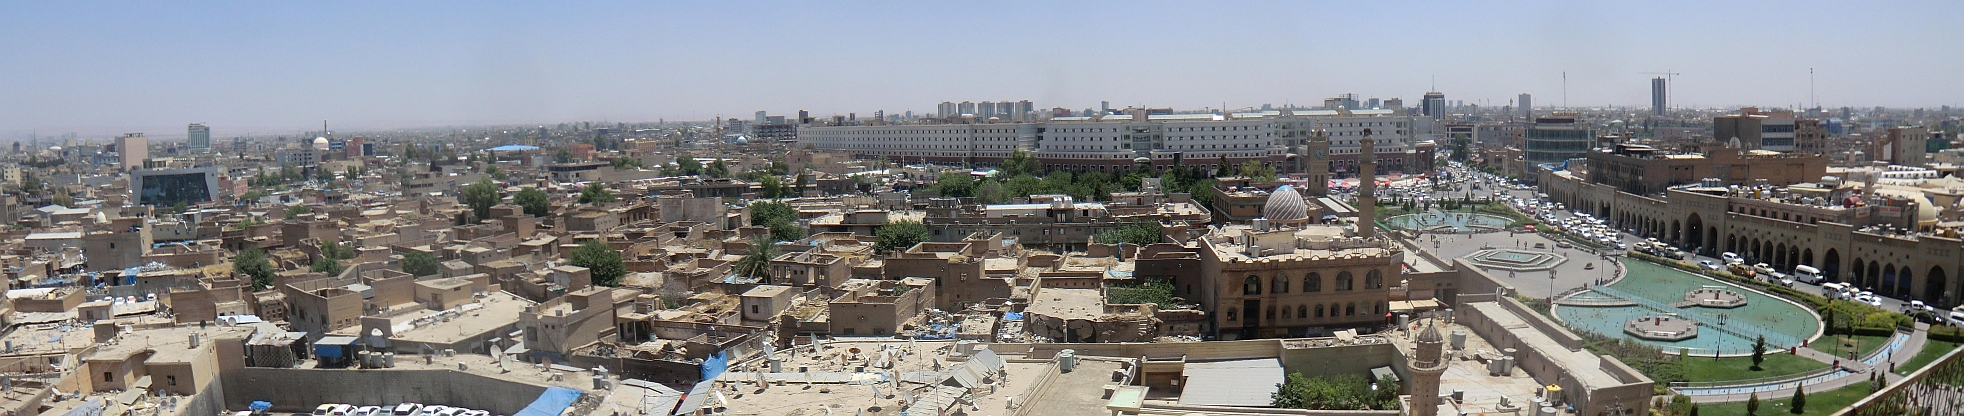 Blick von der Zitadelle auf Erbil